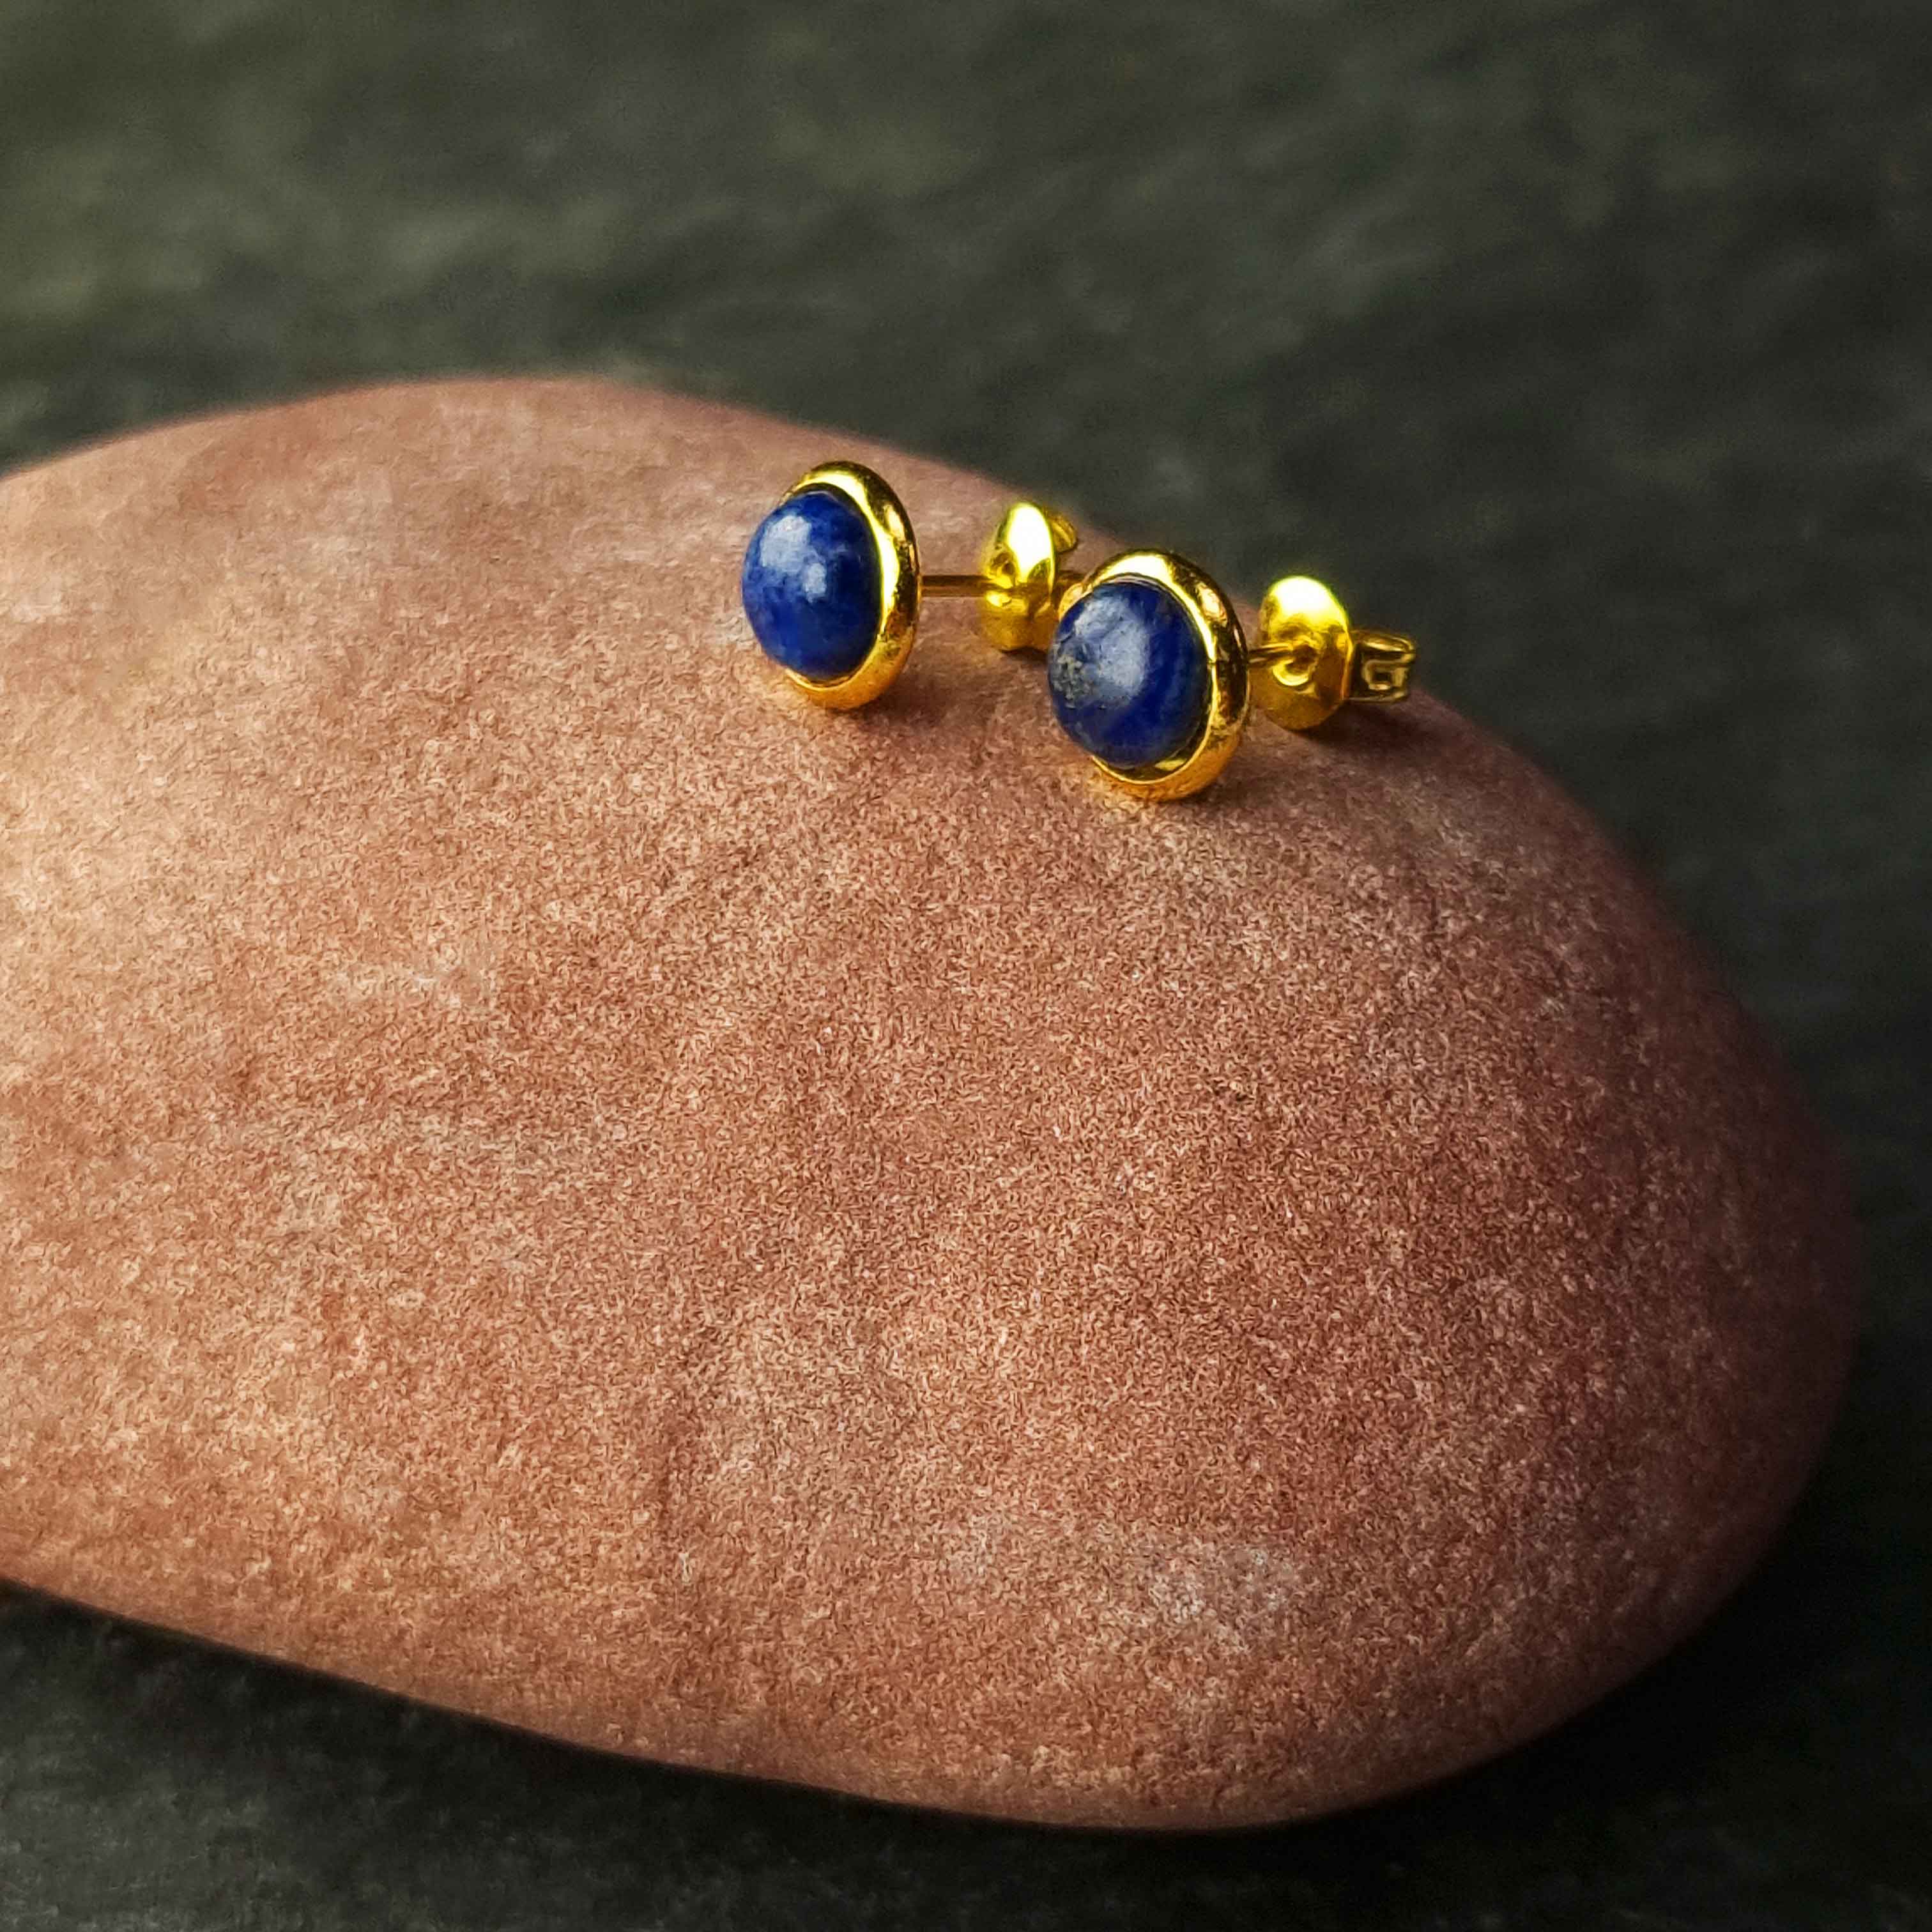 Blauwe edelstenen oorbellen met lapis lazuli, lapis lazuli oorknopjes liggend op rode steen, zijaanzicht